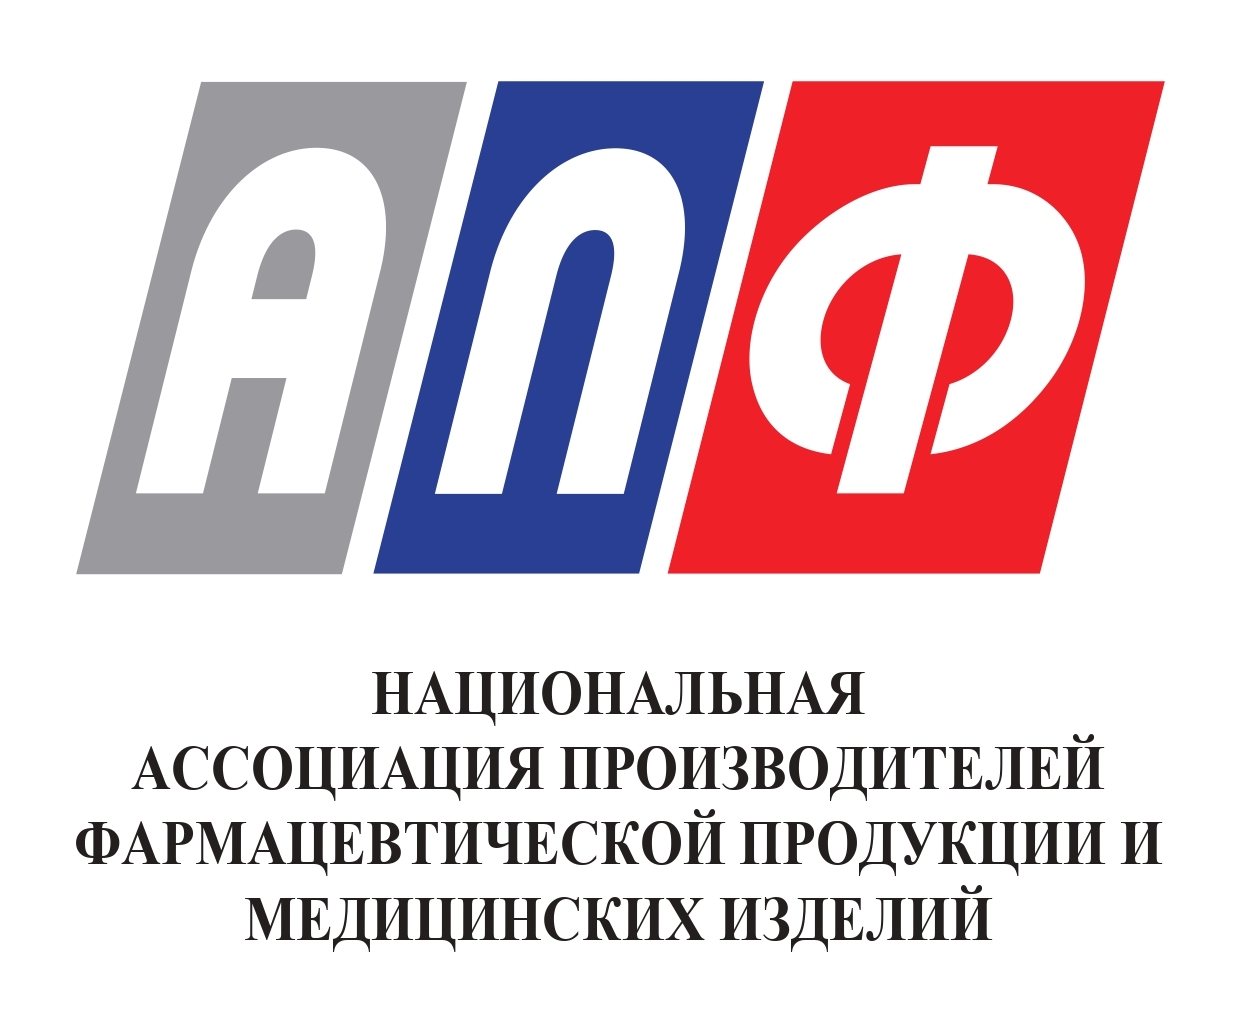 Национальная ассоциация производителей фармацевтической продукции и медицинских изделий "АПФ"